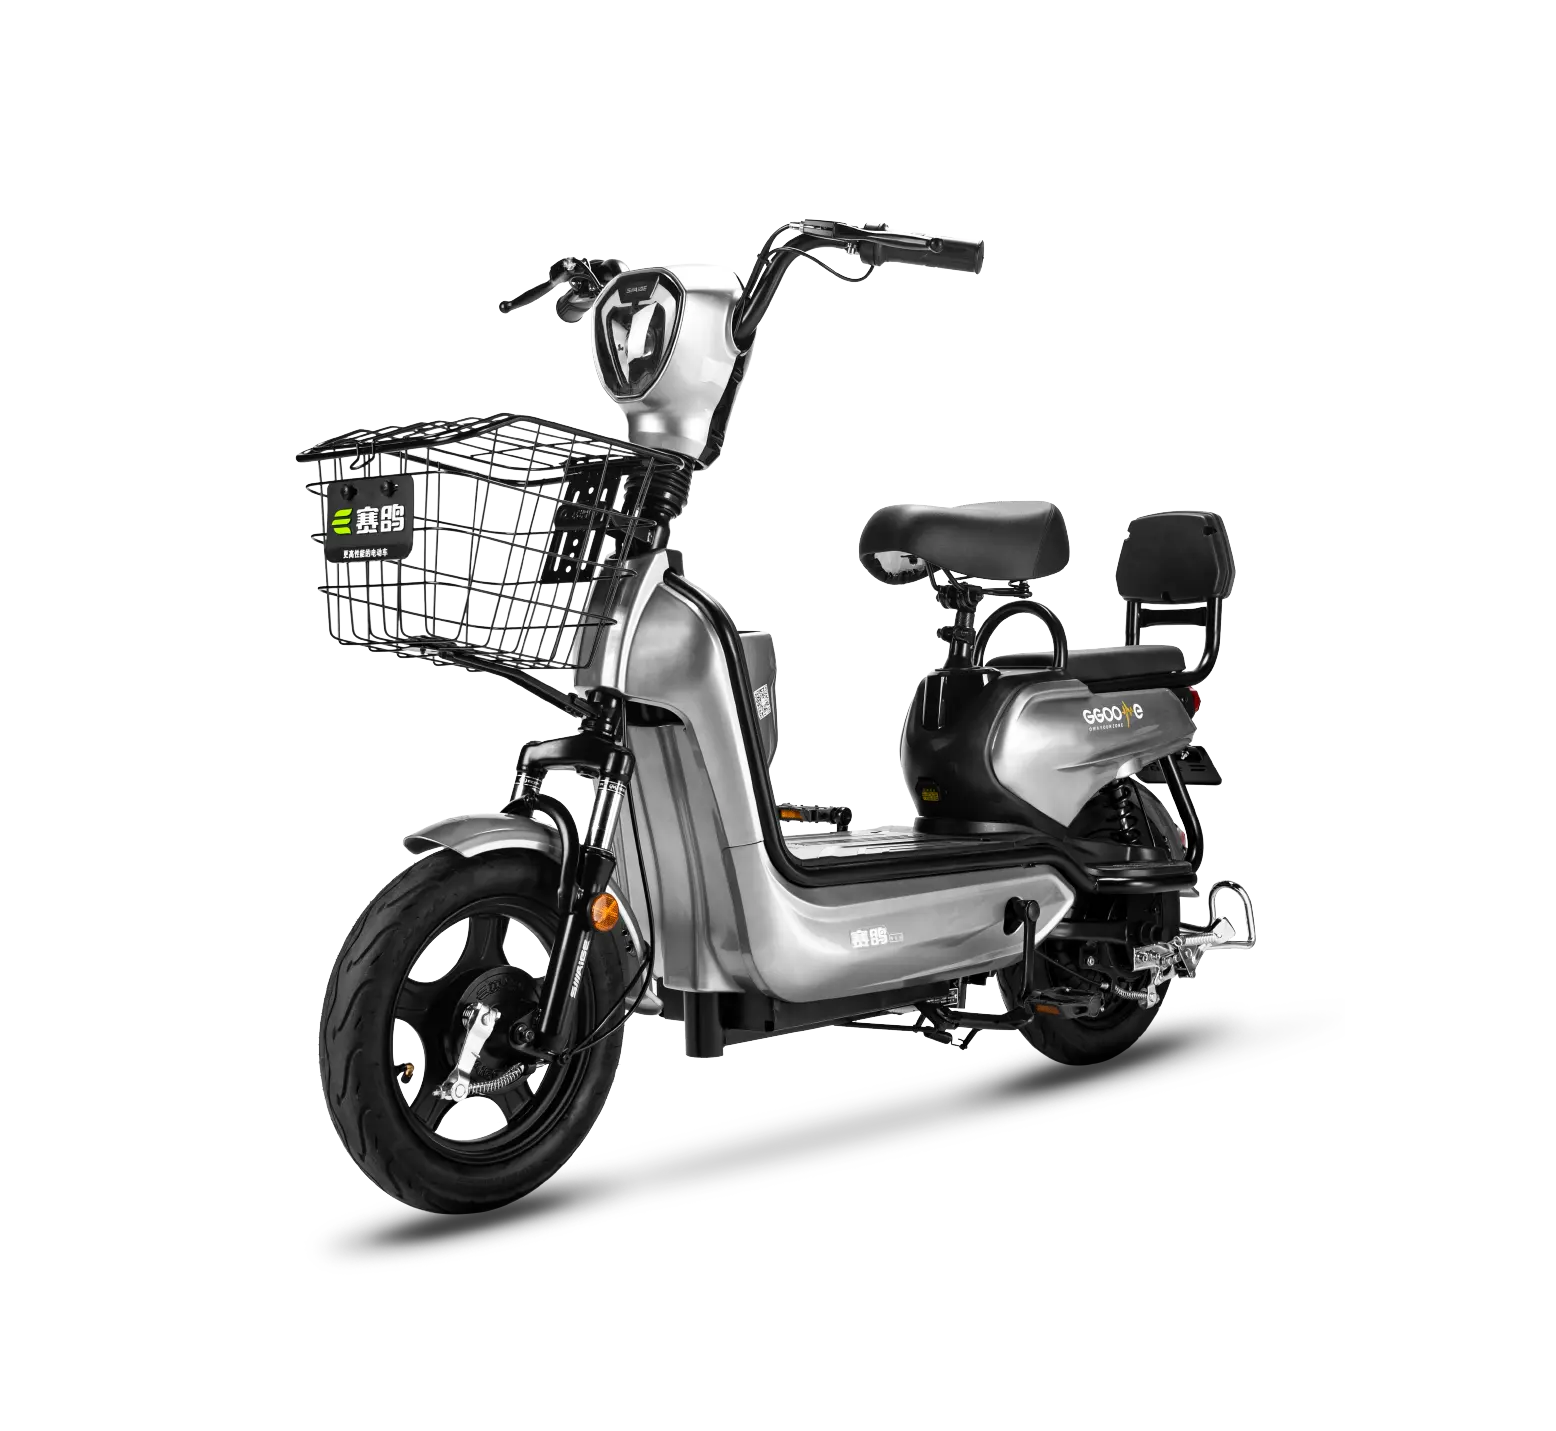 SAIGE รถจักรยานยนต์ไฟฟ้า25กม./ชม. L1e-A EEC EU Street Legal 48v12ah แบตเตอรี่ตะกั่วกรดหรือแบตเตอรี่ลิเธียม E รถจักรยานยนต์